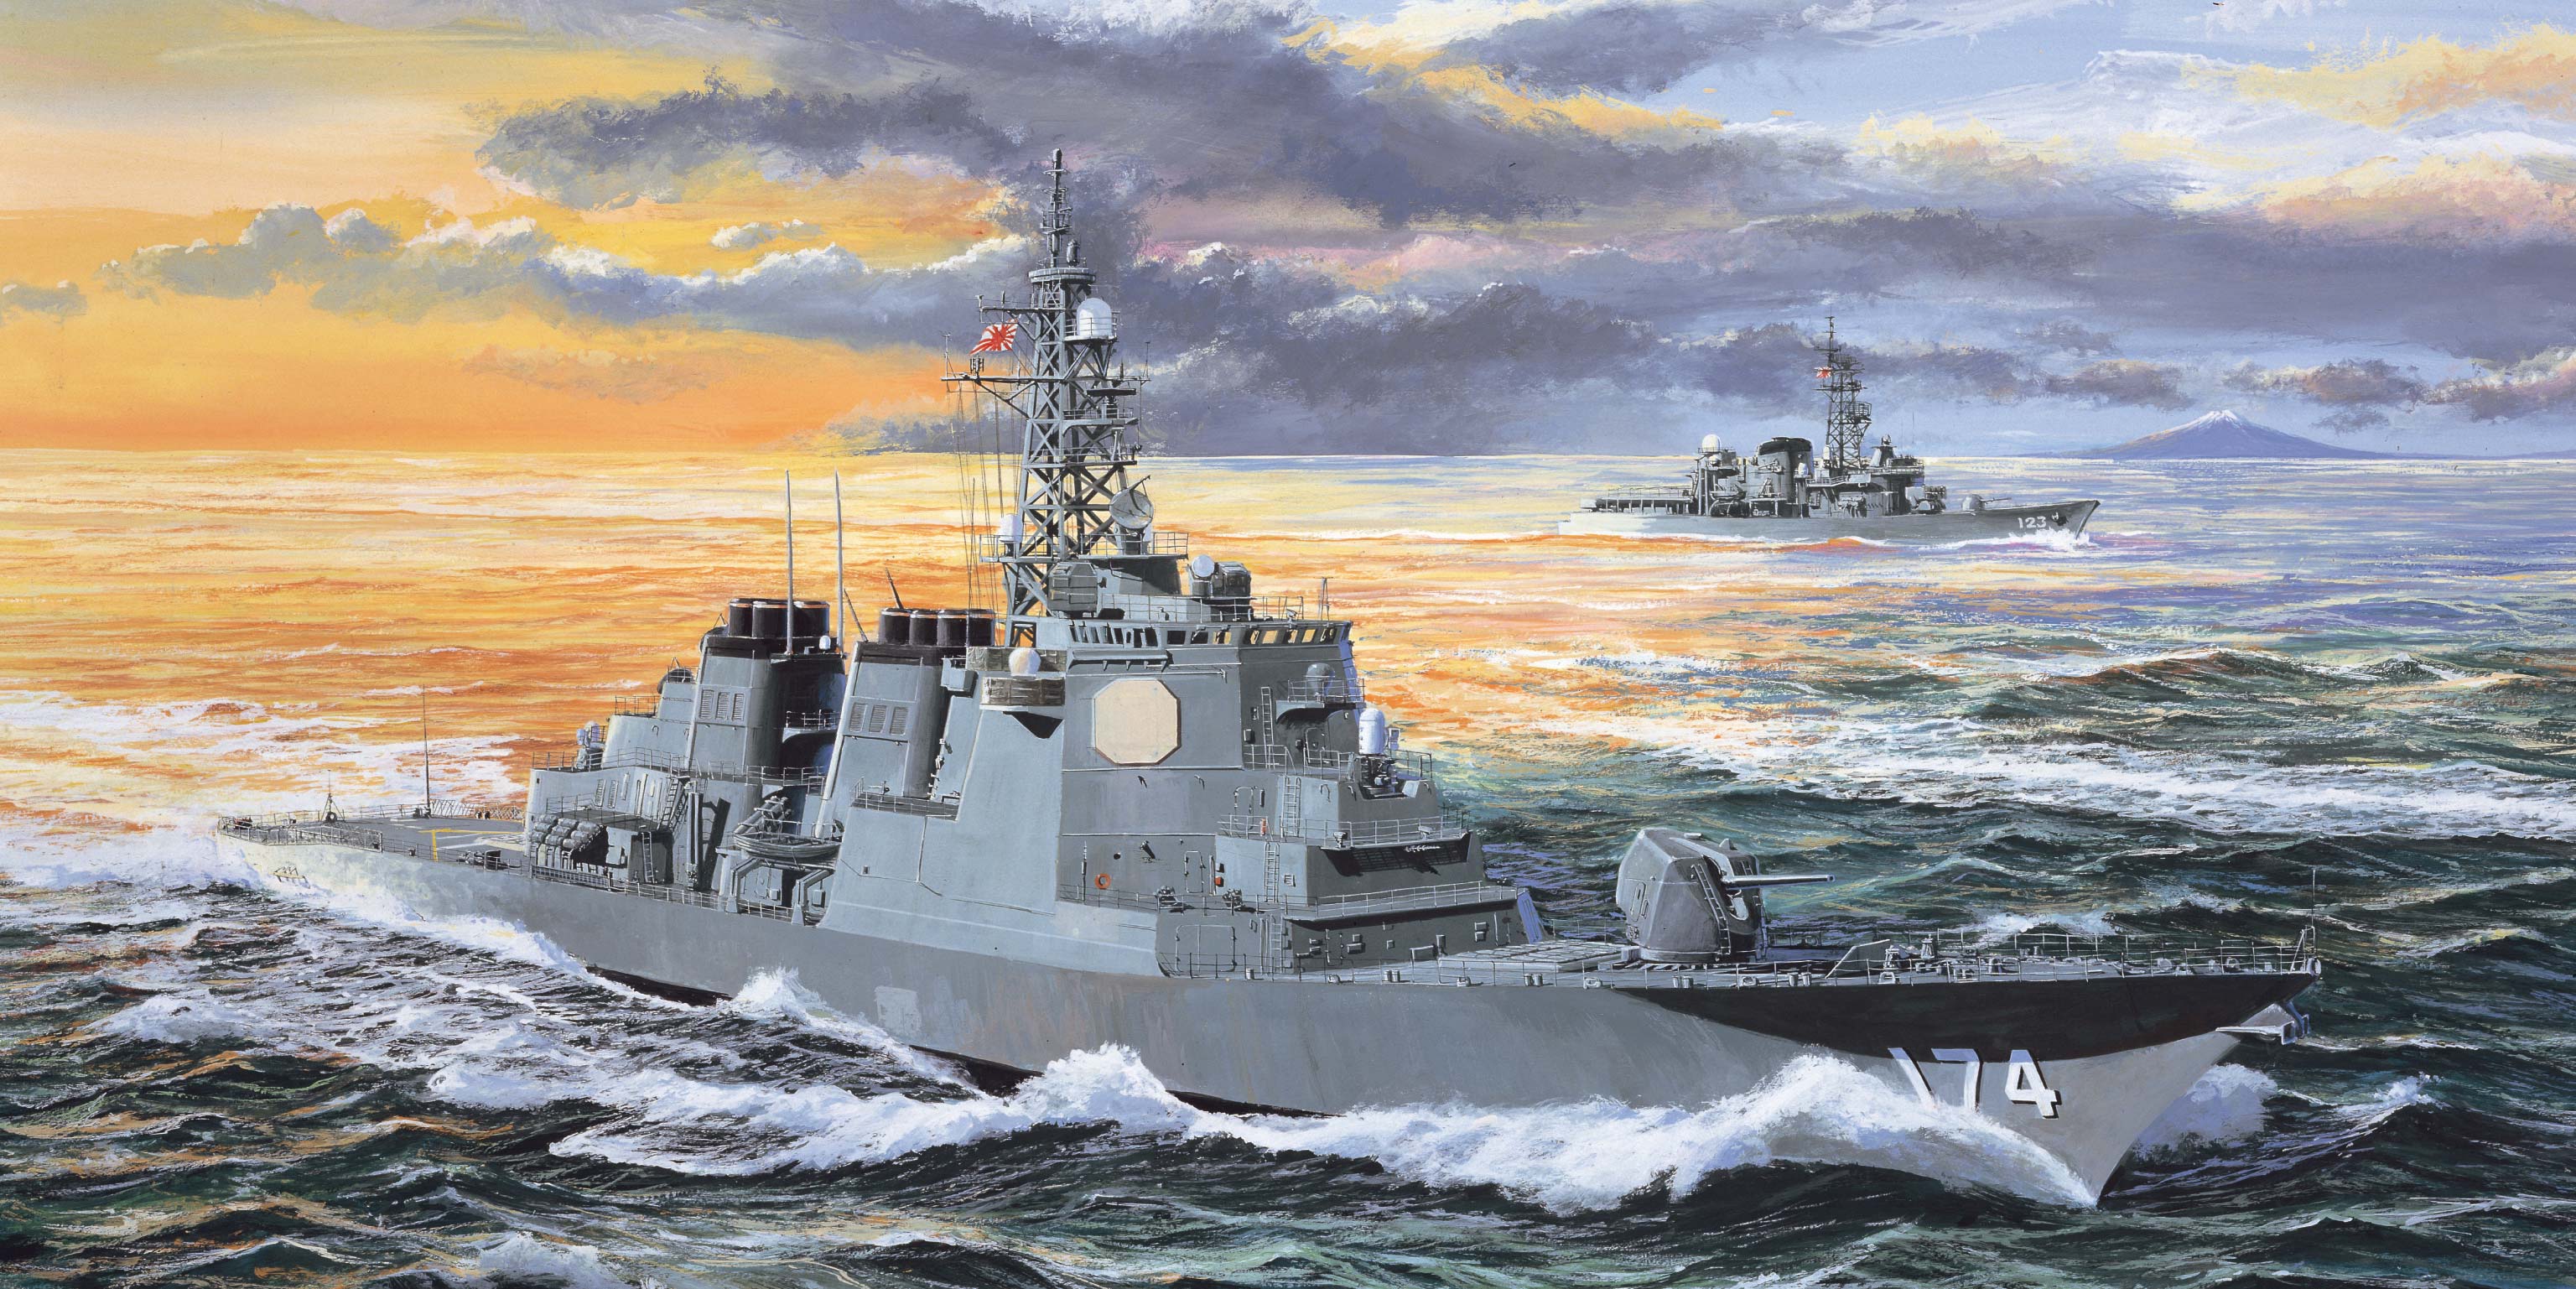 日本海上自卫队“雾岛”号导弹驱逐舰DDG-174    04533